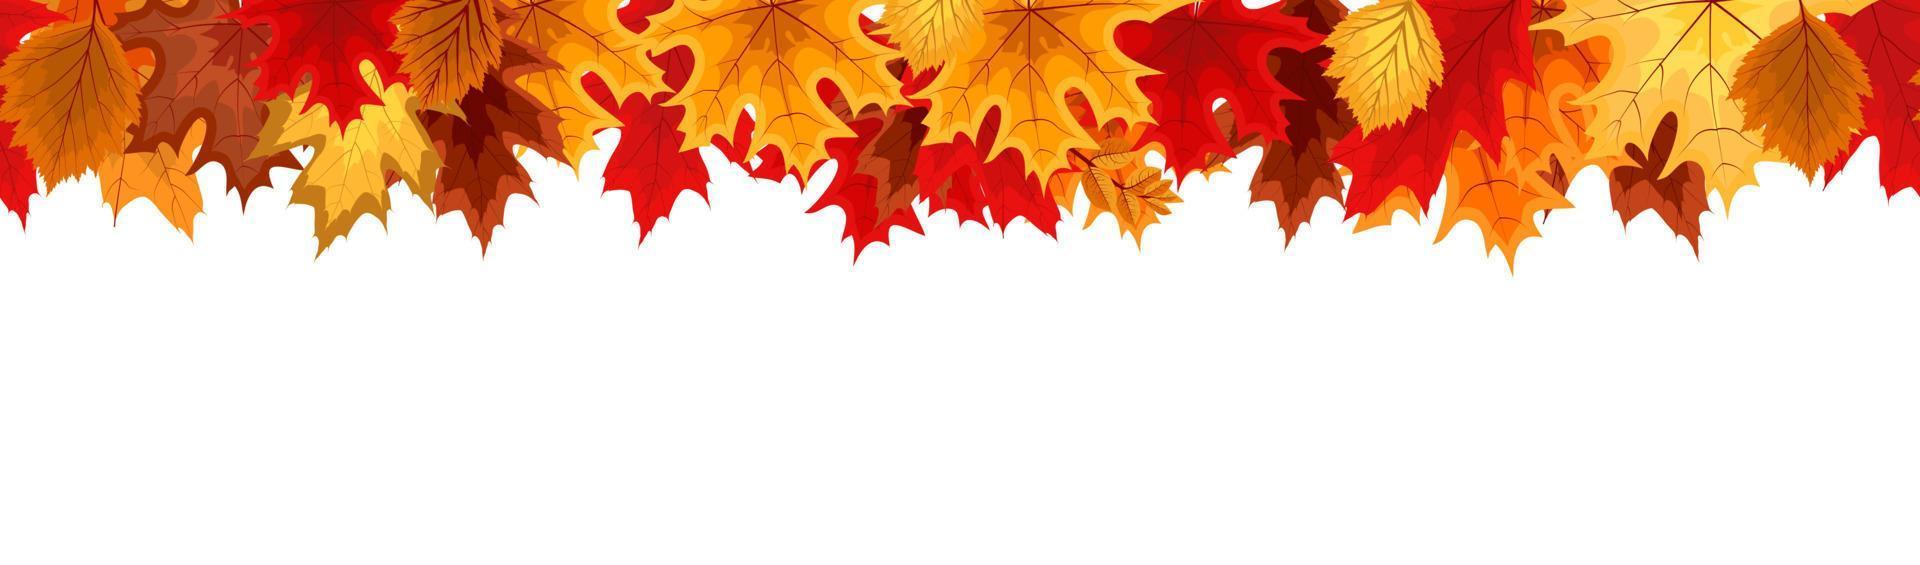 herfst naadloze grens met vallende herfstbladeren. vector illustratie